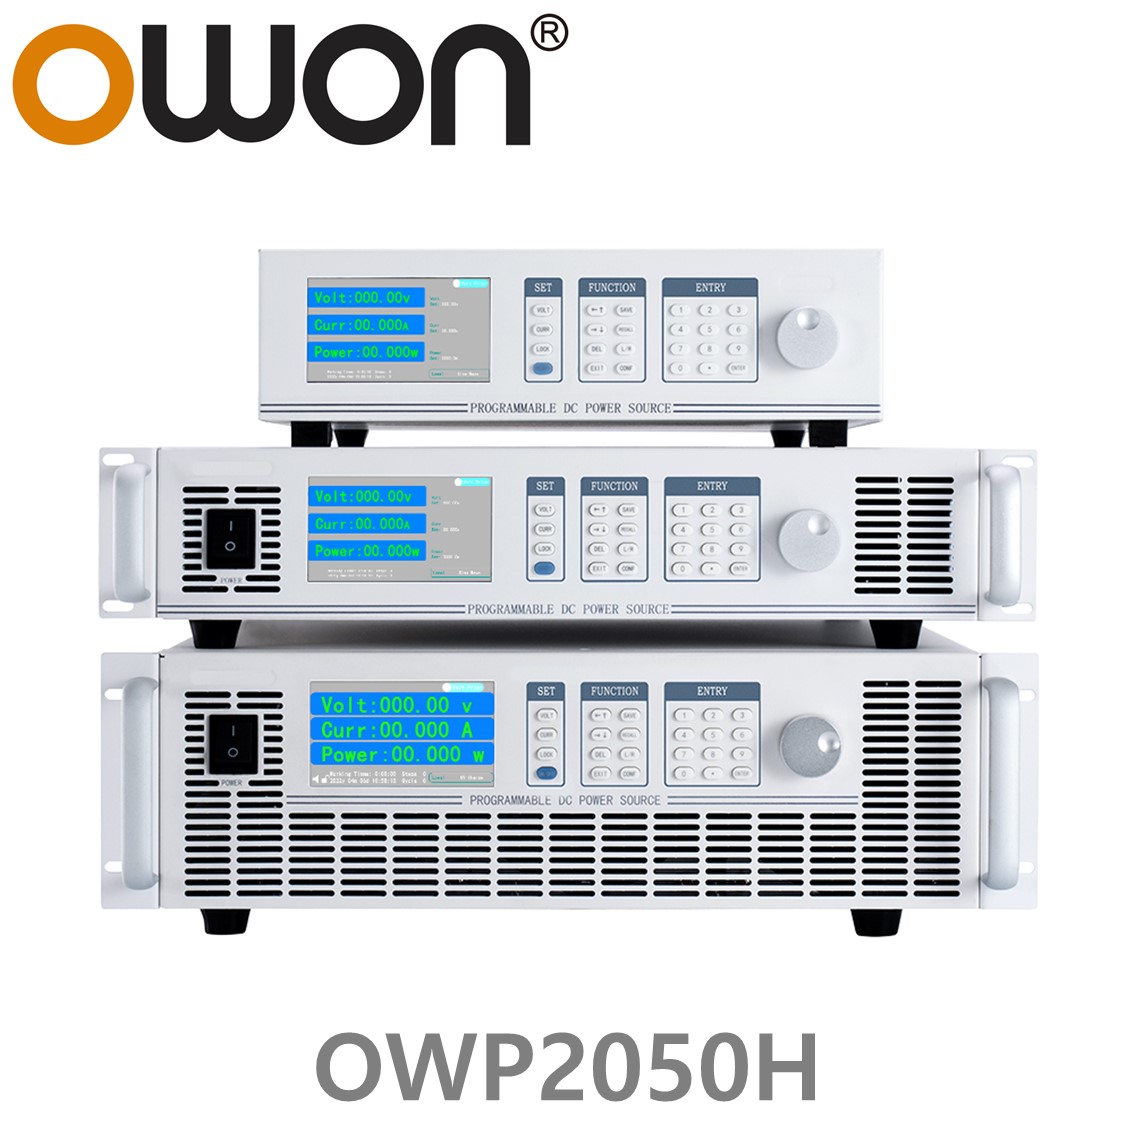 [ OWON ] OWP2050H 고전력 DC파워서플라이, 0-500.00V / 0-9.0000A / 2000.0W DC전원공급장치